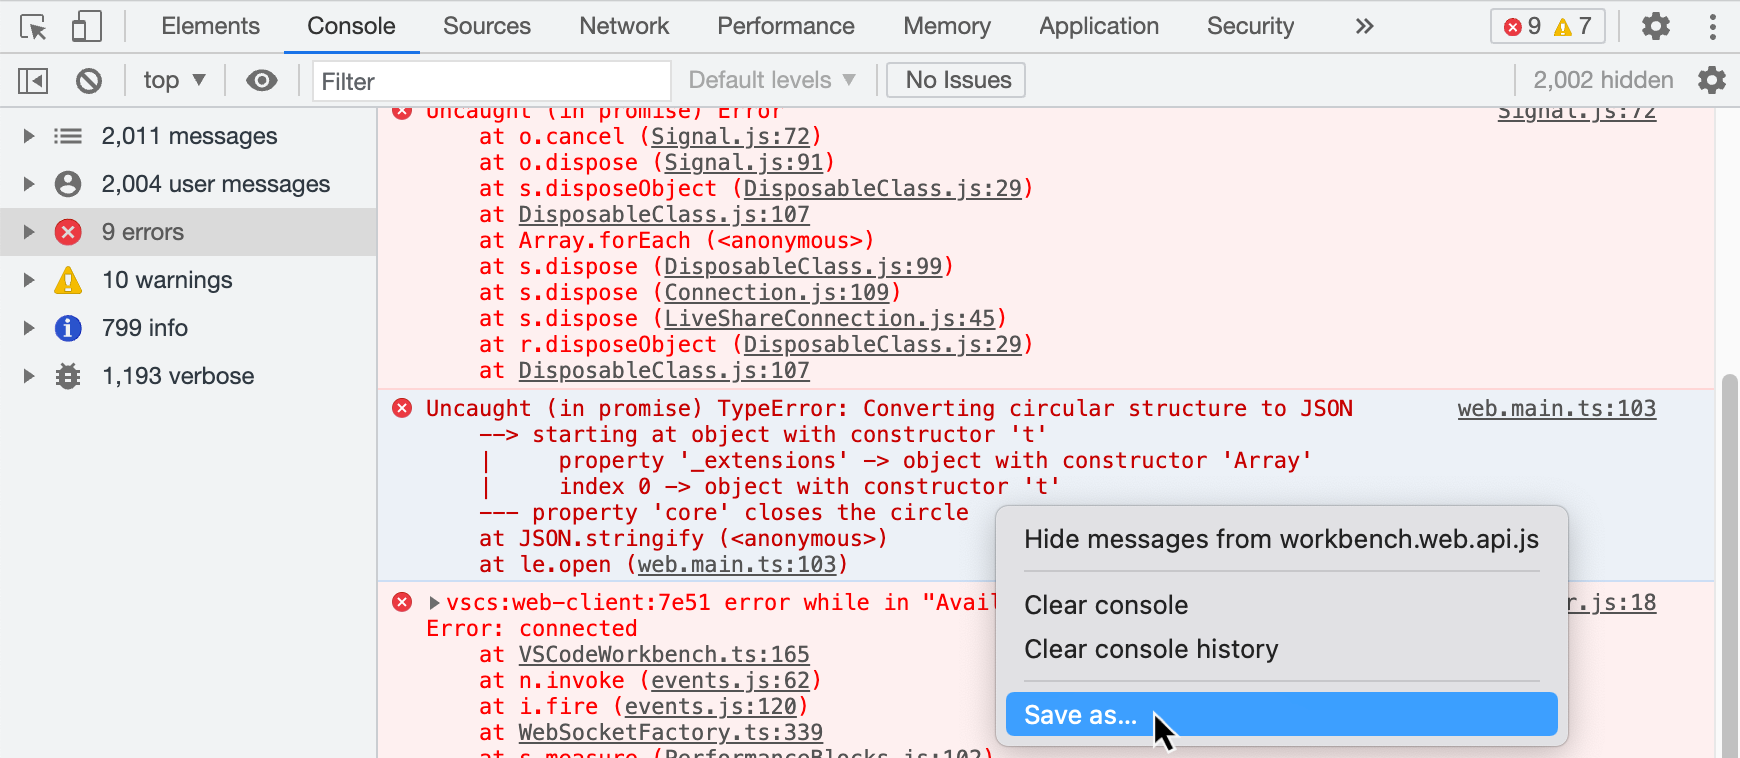 Снимок экрана: панель инструментов разработчика в браузере Chrome. Отображается меню правой кнопкой мыши с параметром "Сохранить как".